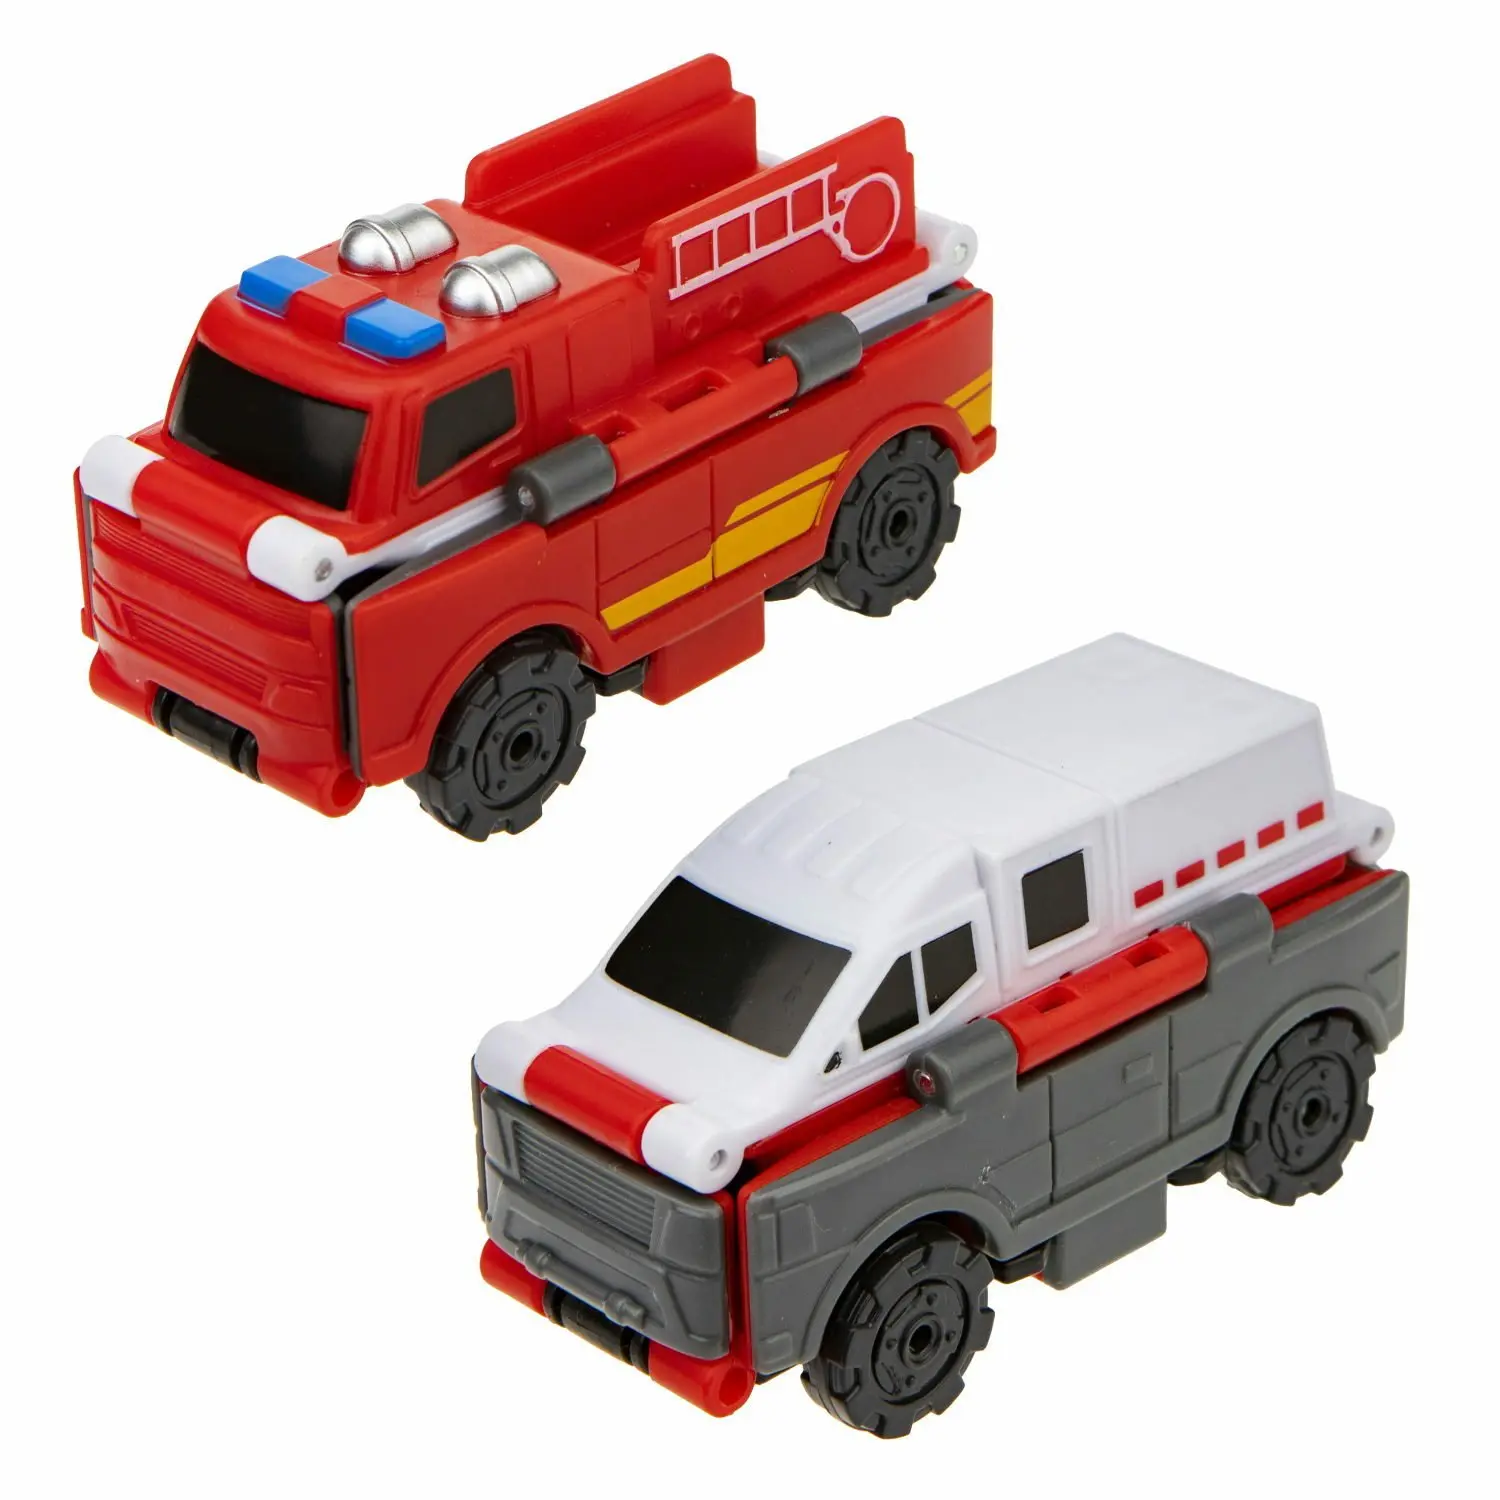 Transcar Double Пожарный автомобиль - Траспортная полиция - фото